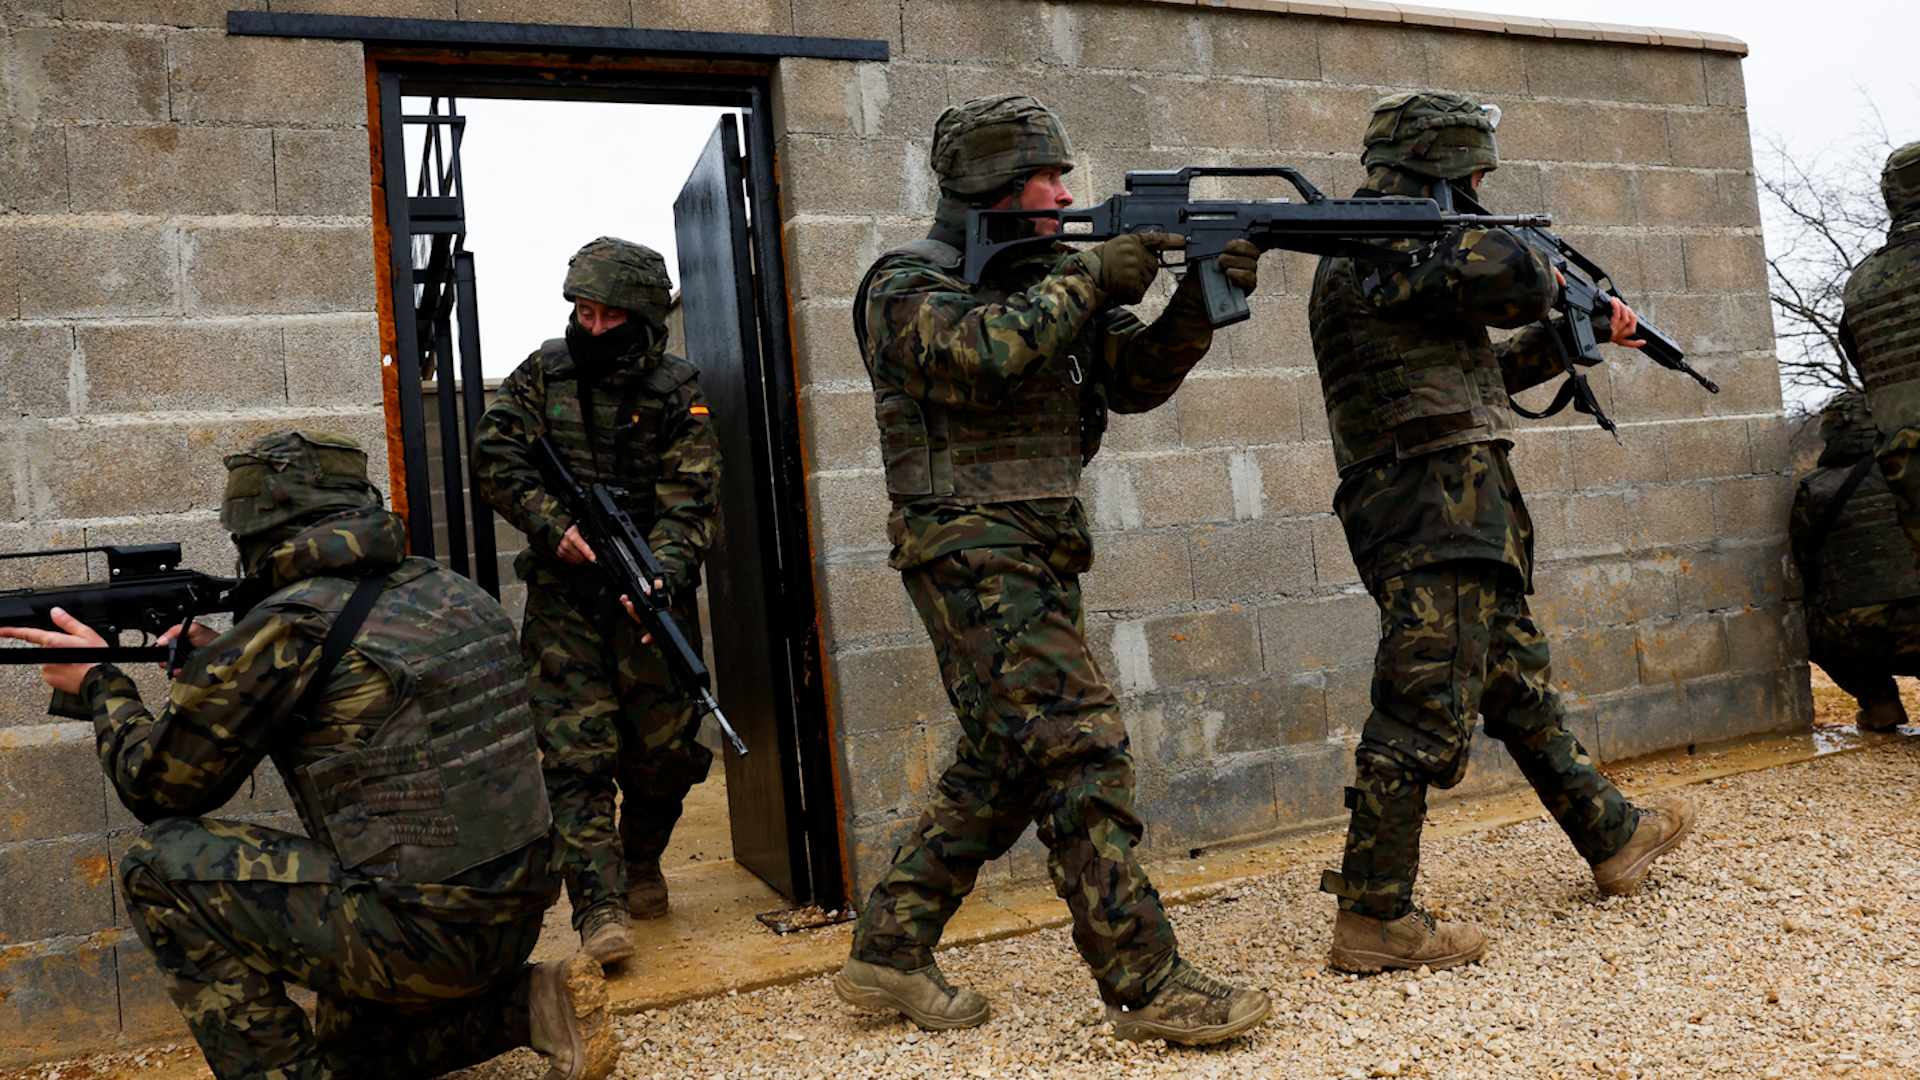 Binh lính Ukraine huấn luyện ở Tây Ban Nha để quay trở lại tham chiến - Ảnh 1.